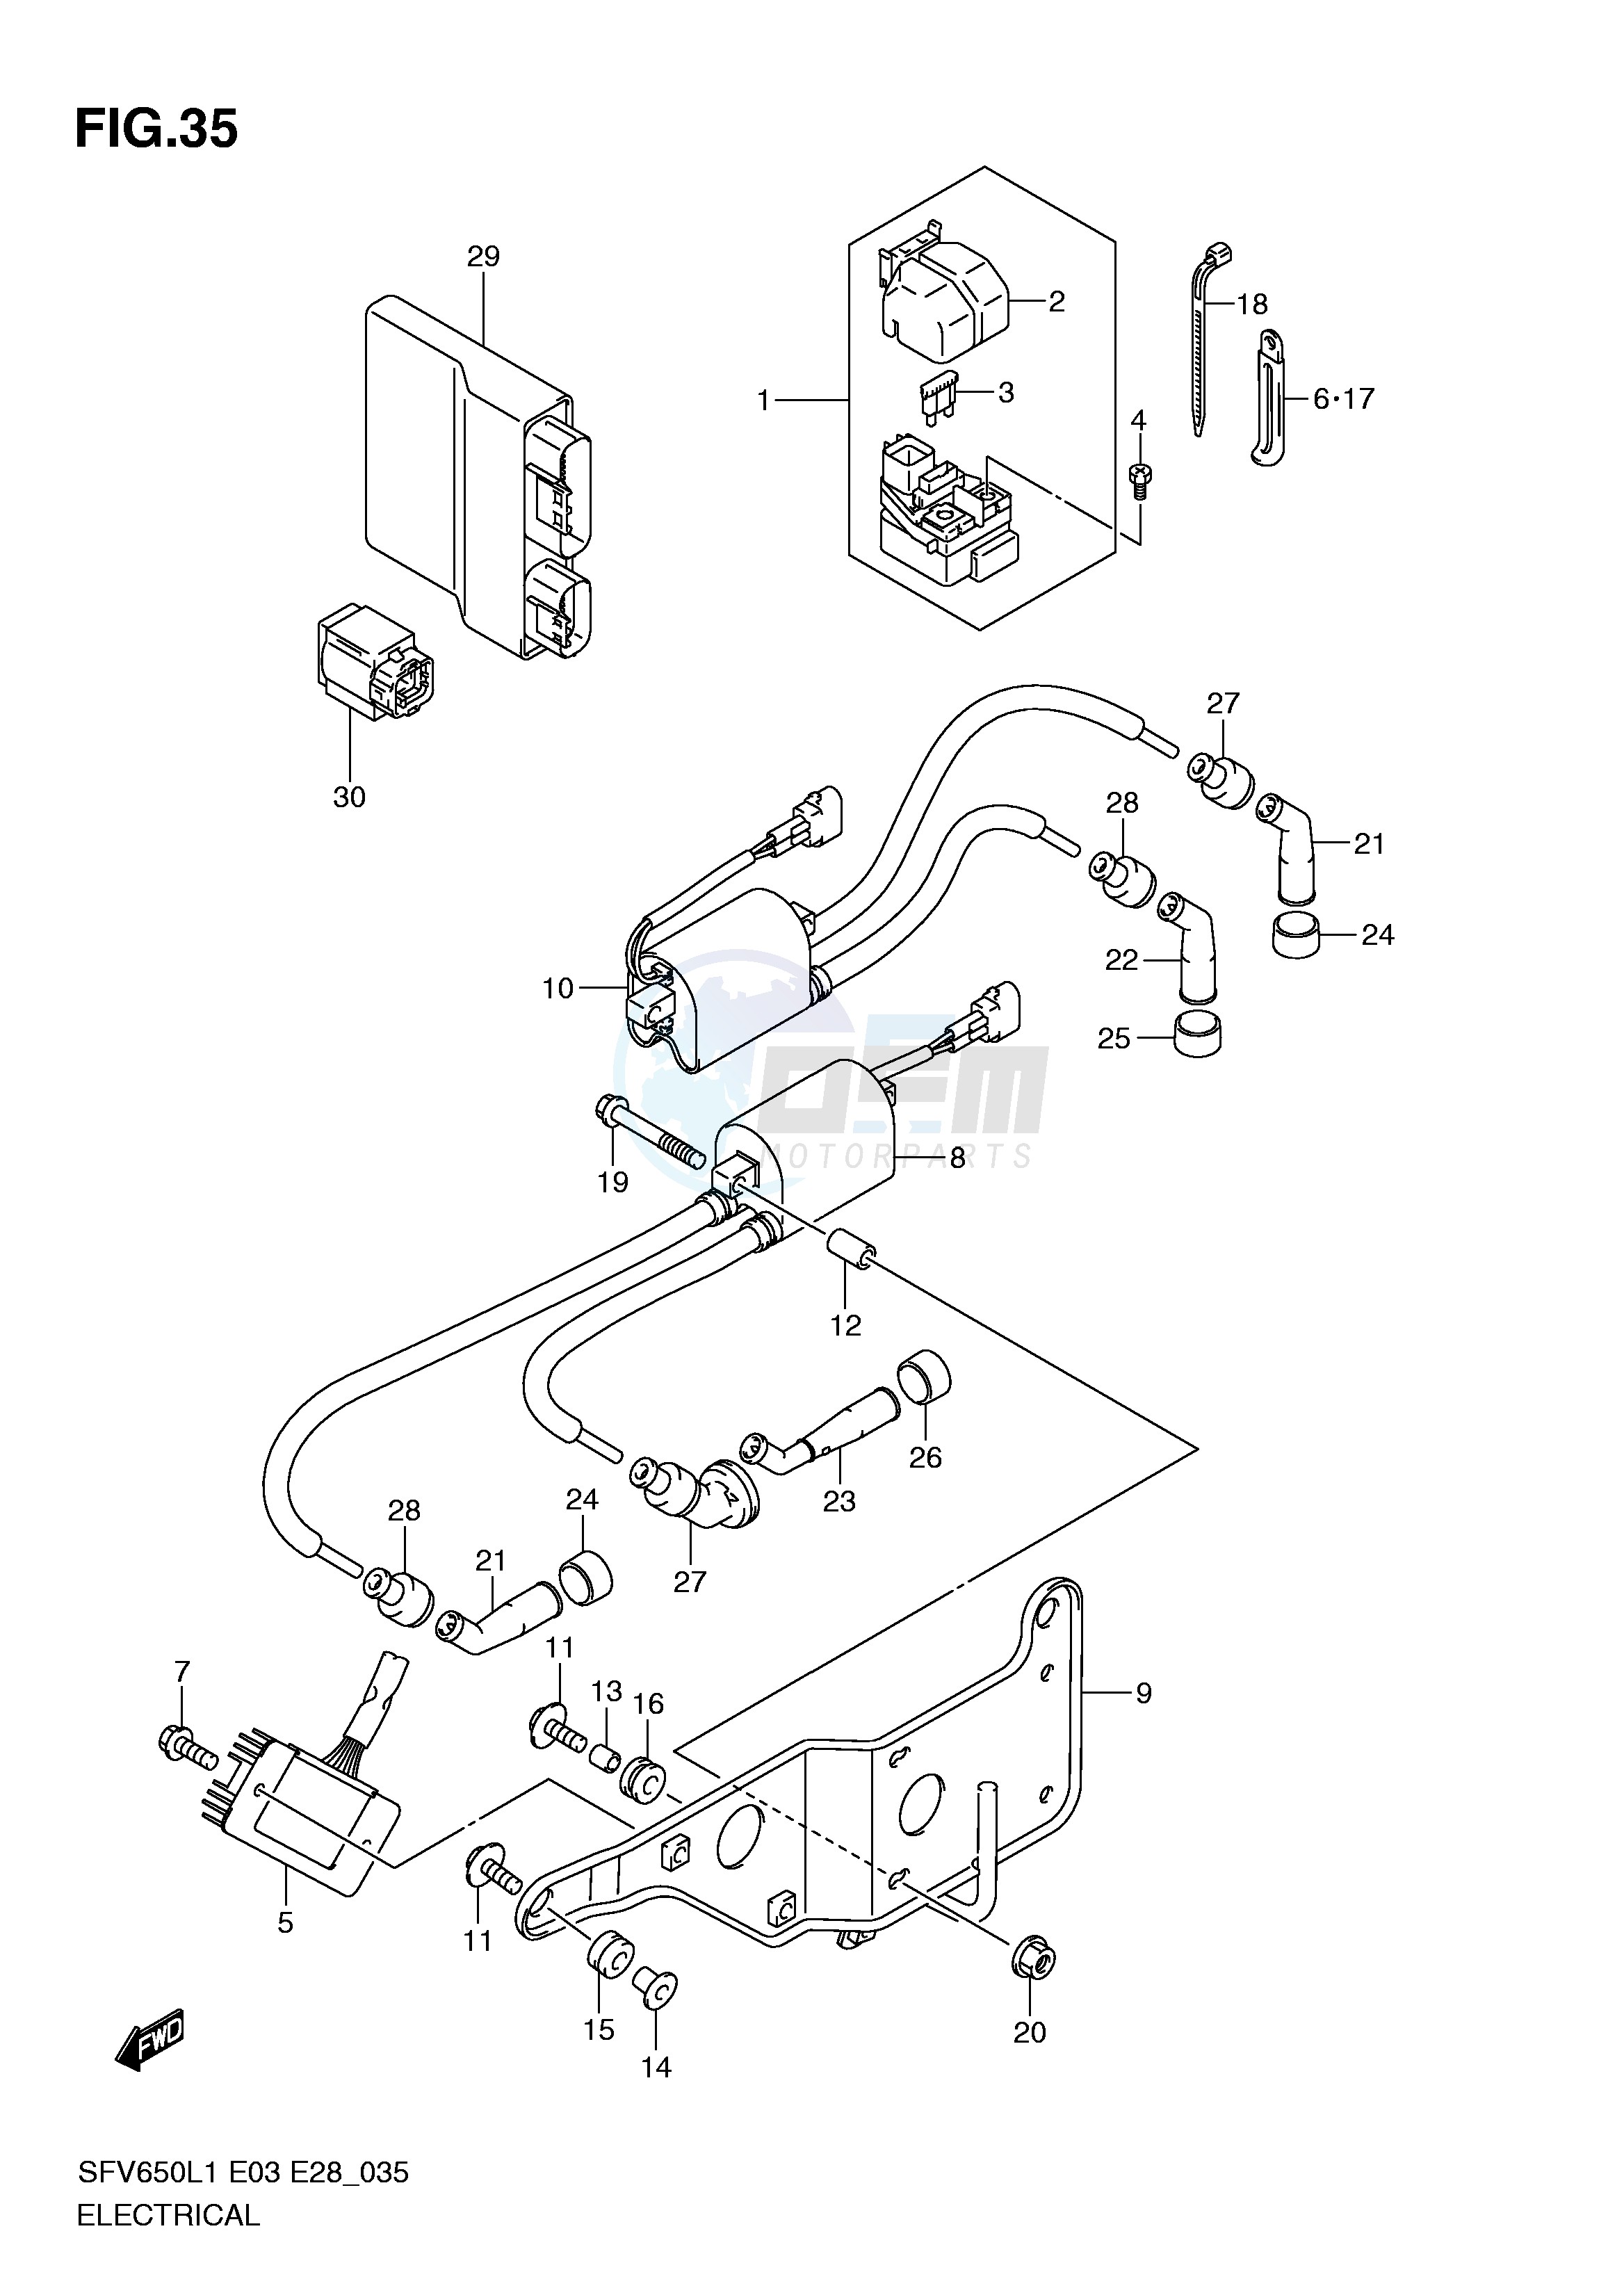 ELECTRICAL (SFV650L1 E3) blueprint